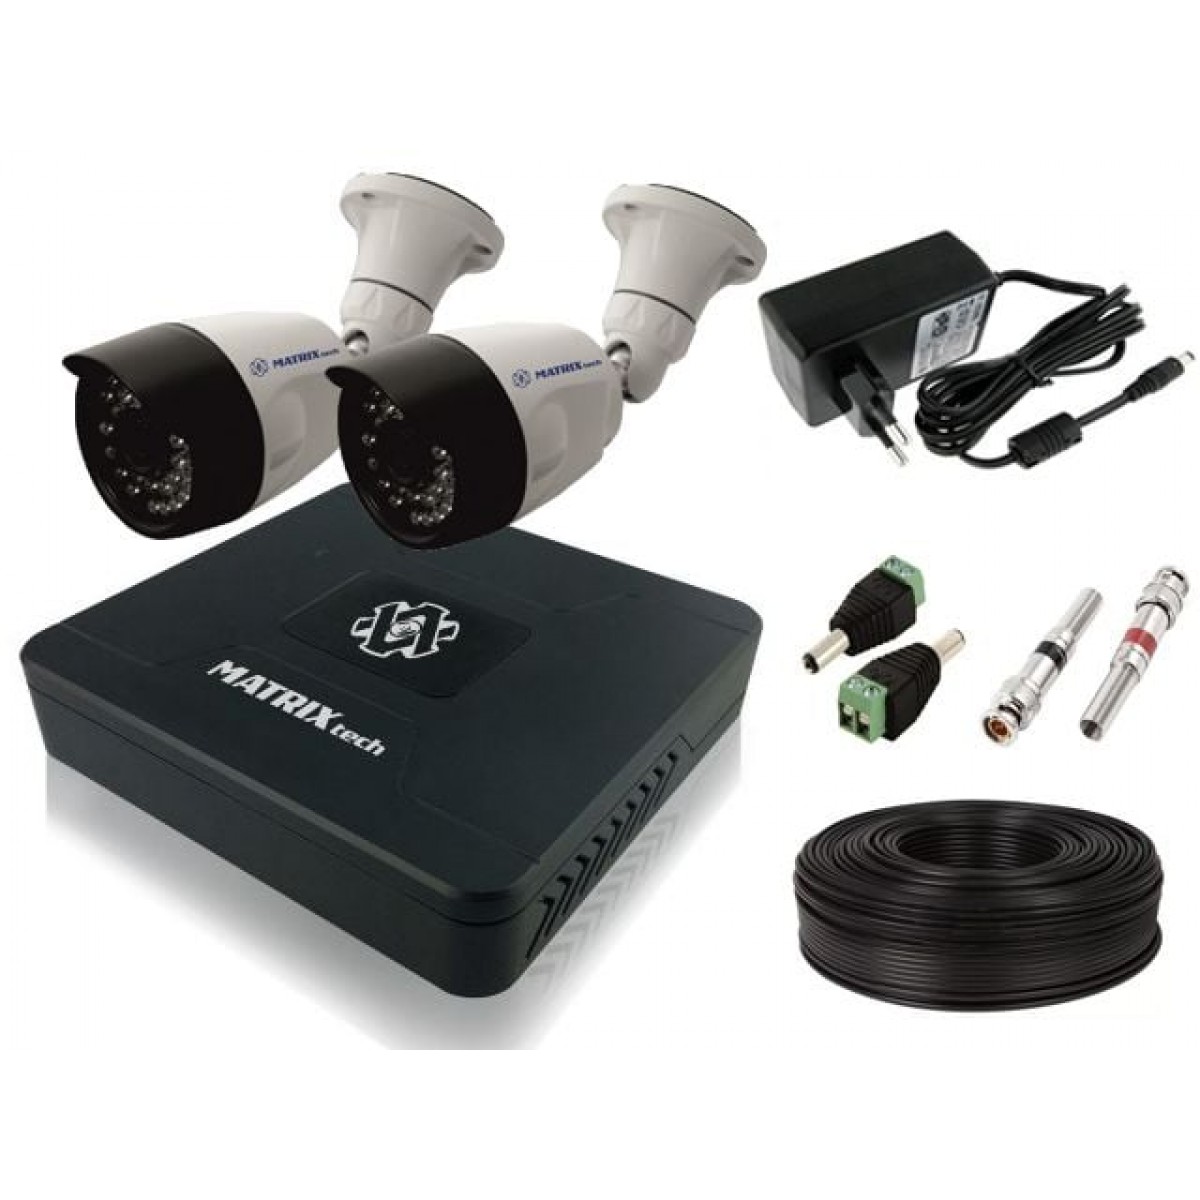 Регистратор уличный. Комплект видеонаблюдения Матрикс. Камера видеонаблюдения XPX комплект н.264. MT-cw720ahd20x (2,8мм).. Комплект системы видеонаблюдения 2(3071896).